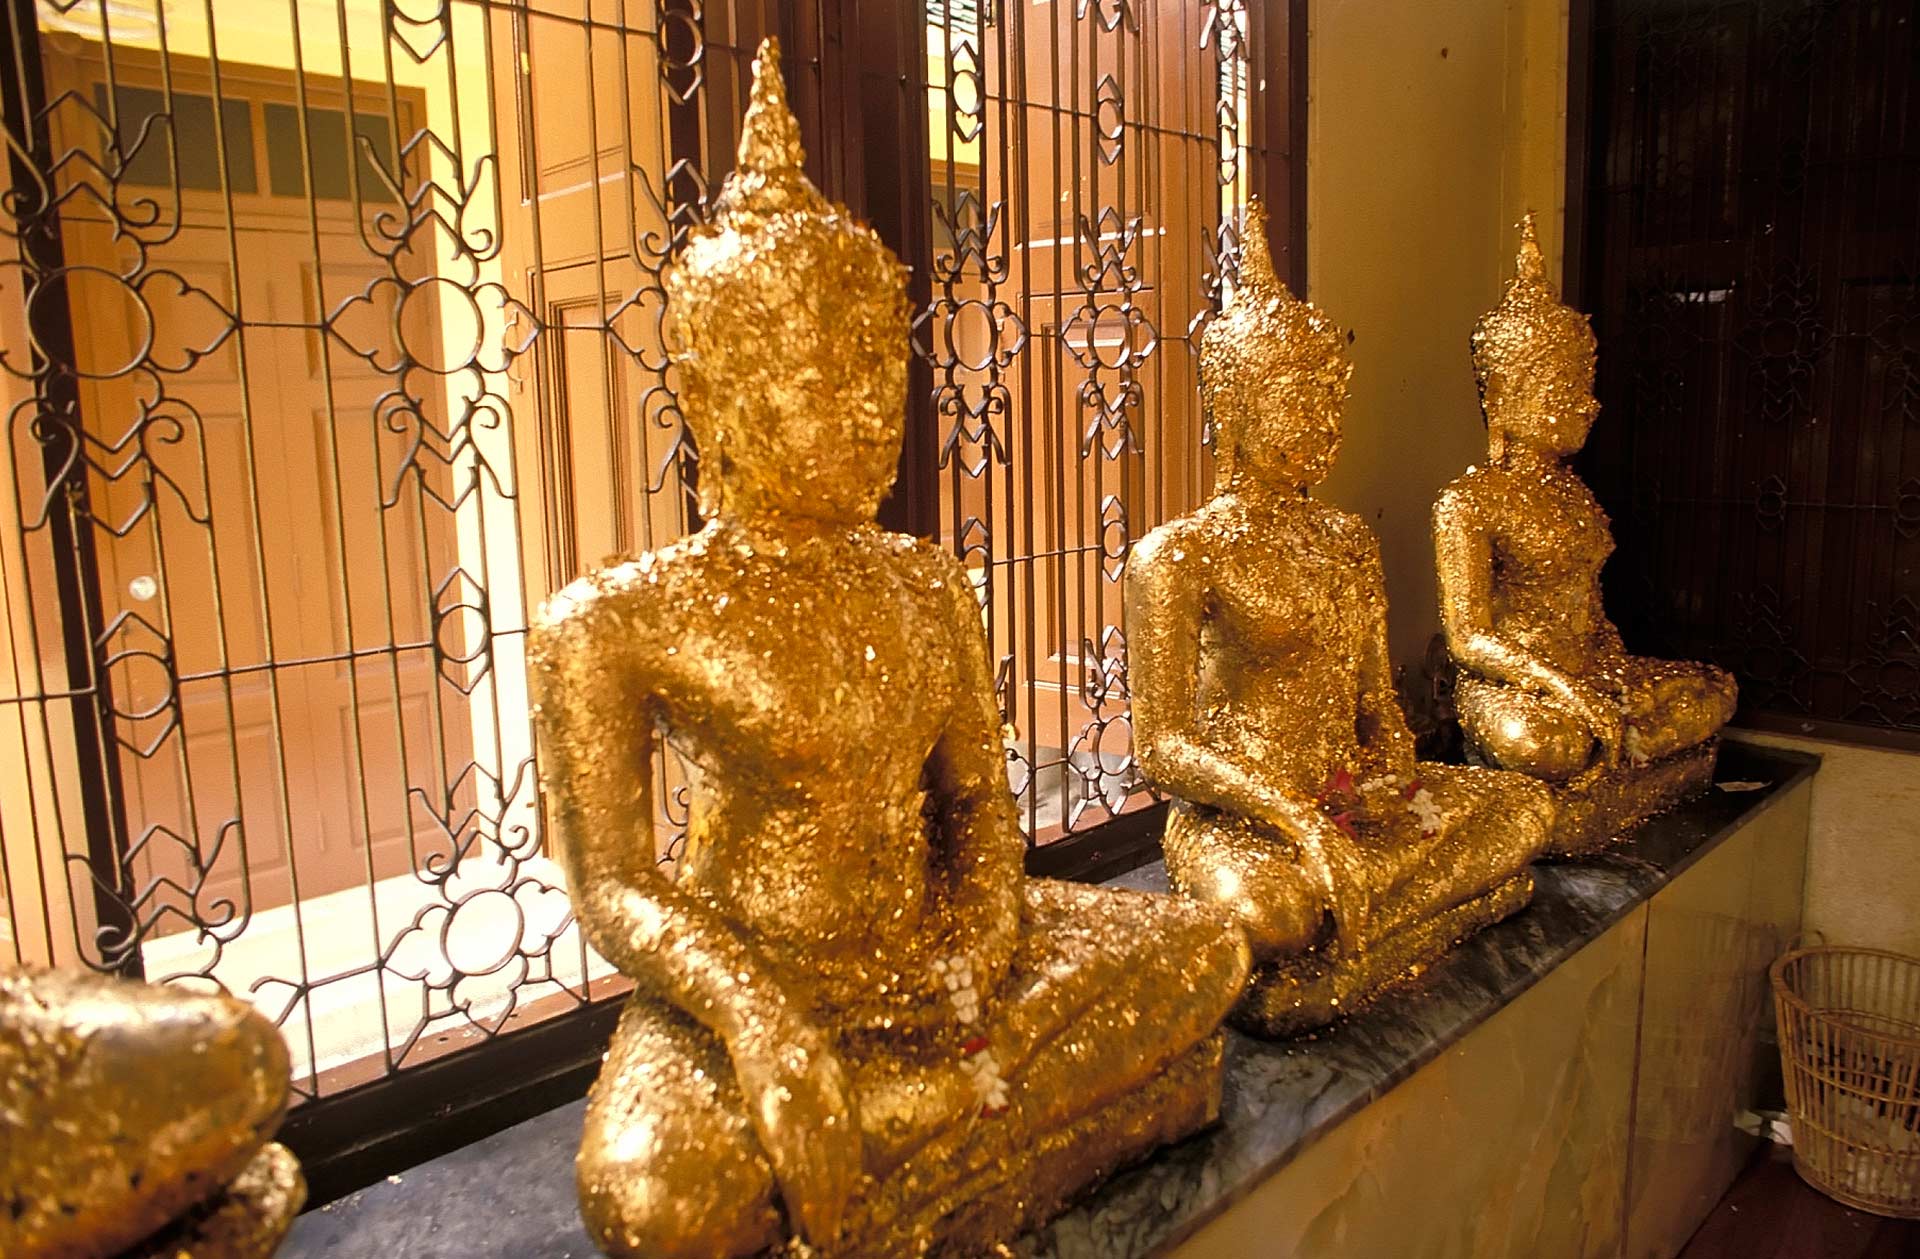 Buddha statues at a small shrine, Bangkok, Thailand